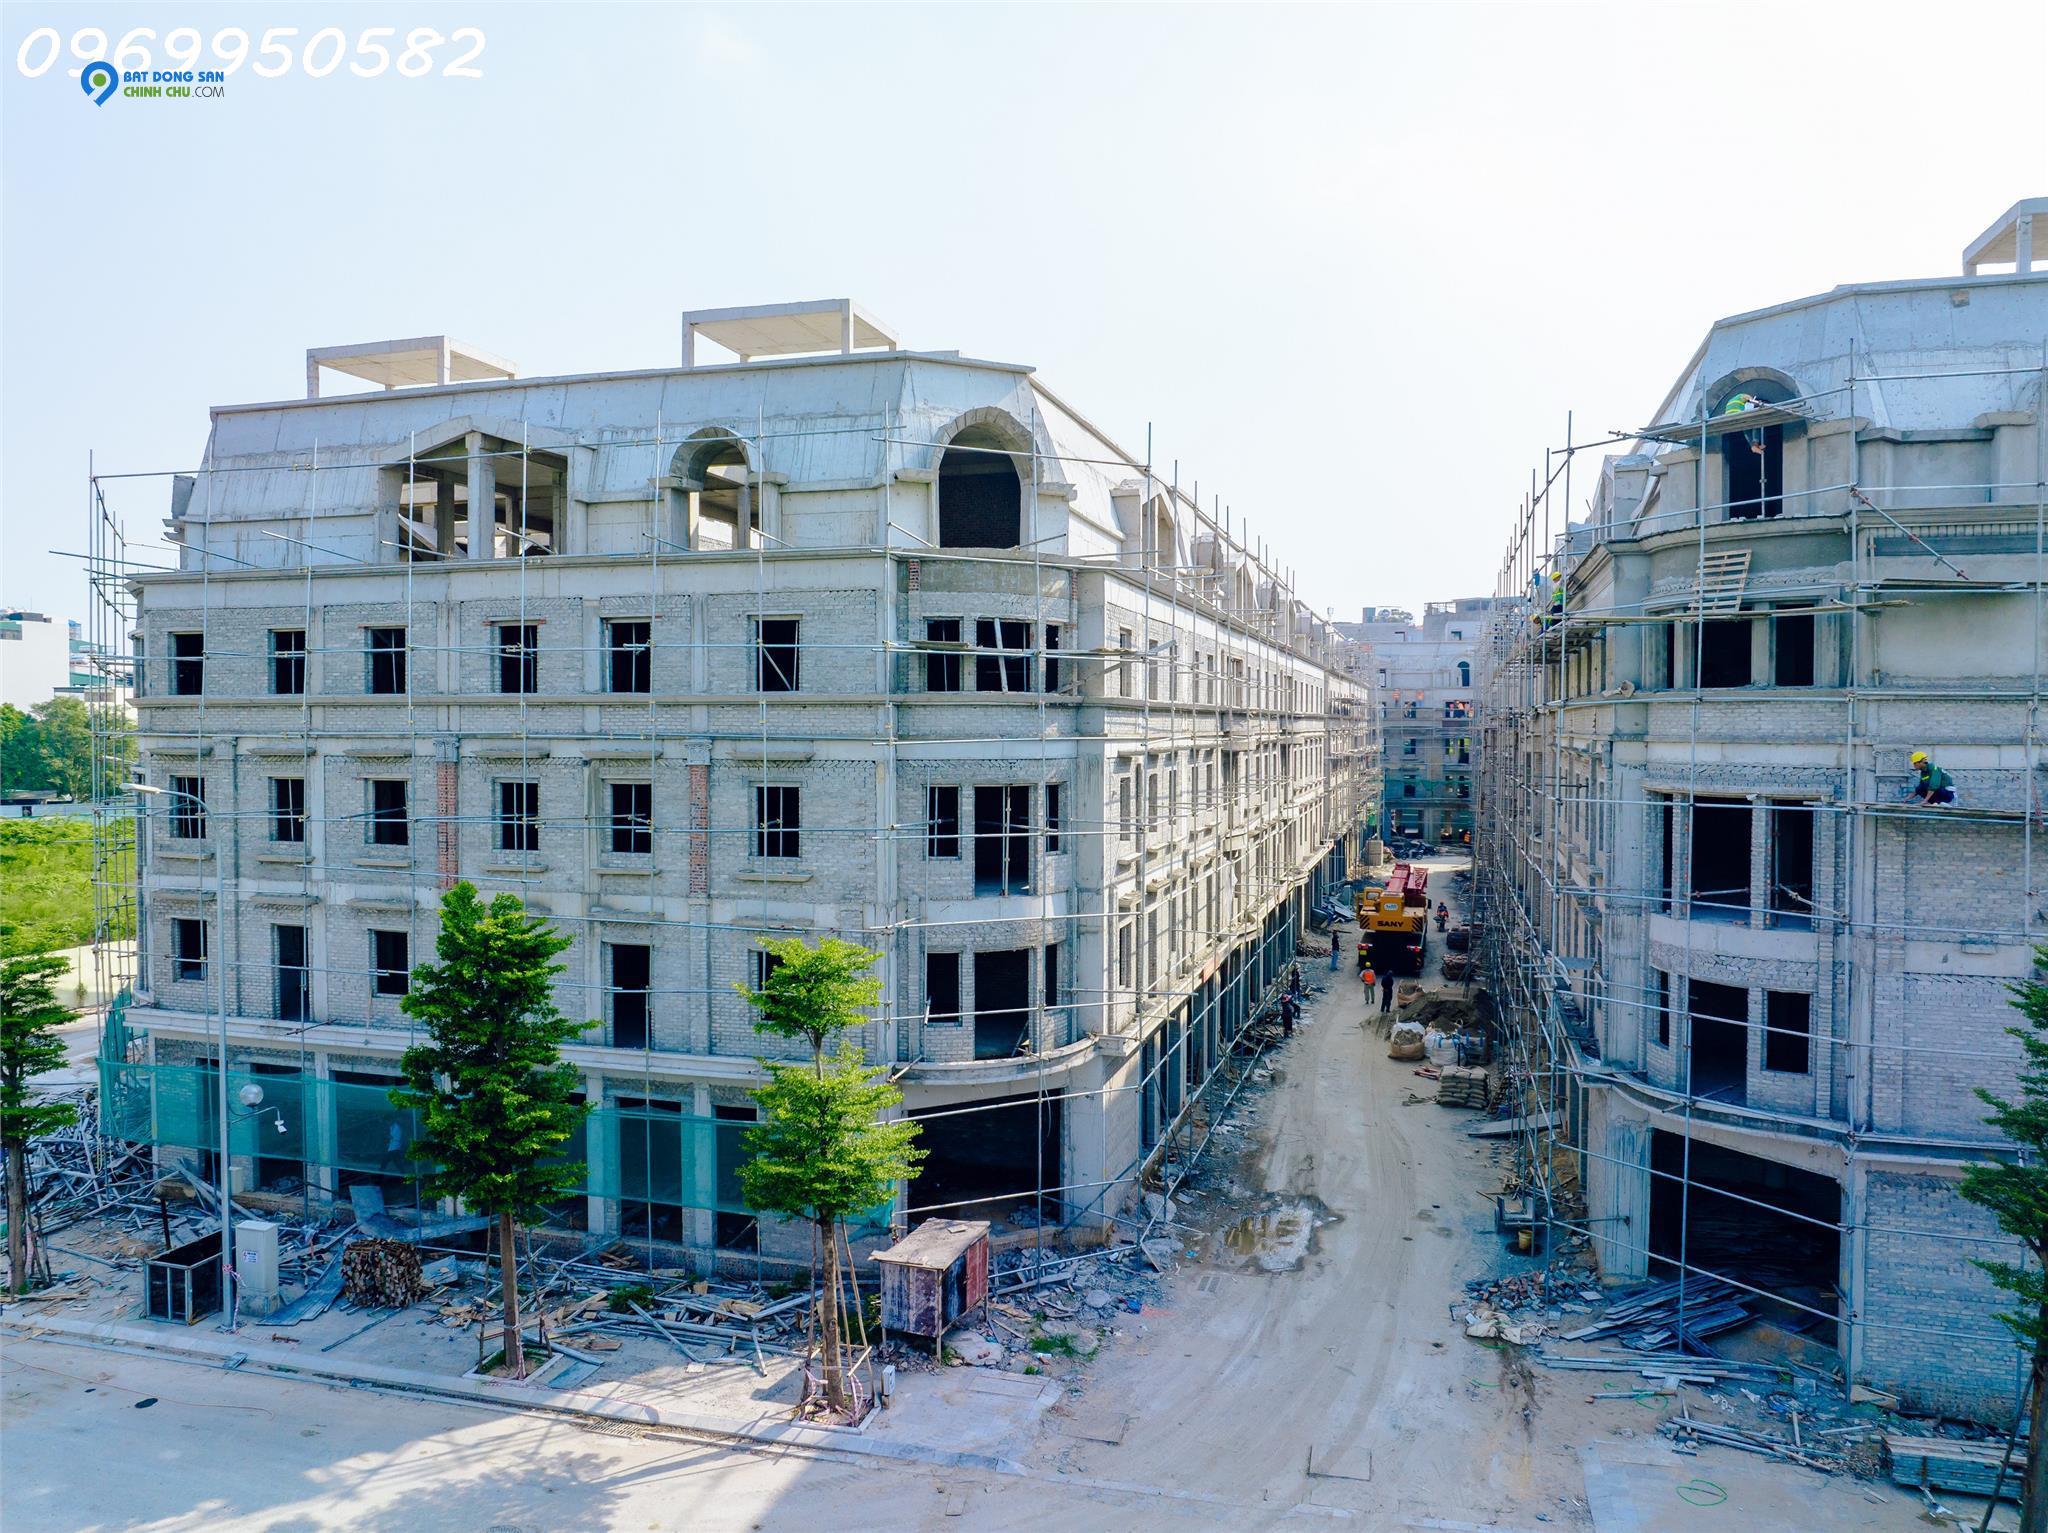 Bán nhà mặt phố Nguyễn Xiển 93 m2, cao 6 tầng, đang cho thuê 120 tr/tháng.